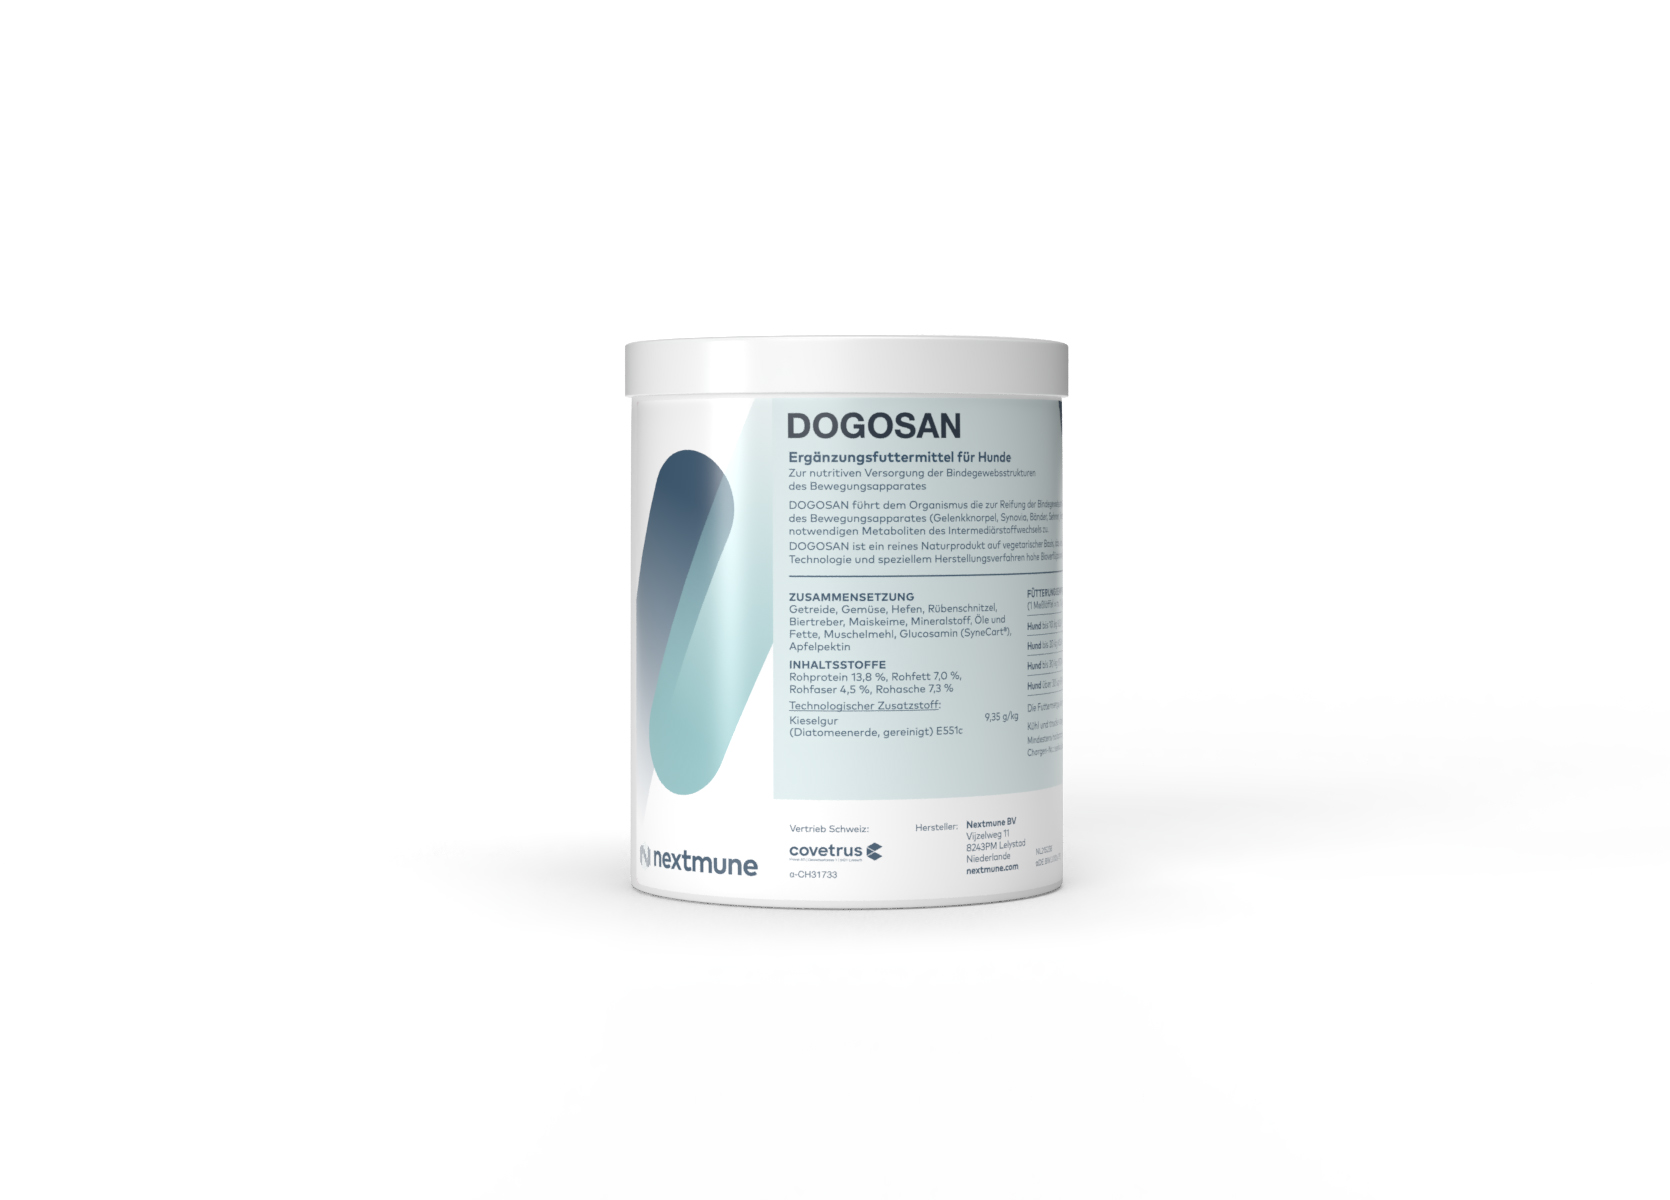 Dogosan 625g Ergänzungsfuttermittel für Hunde zur nutritiven Versorgung der Bindegewebsstrukturen des Bewegungsapparates.